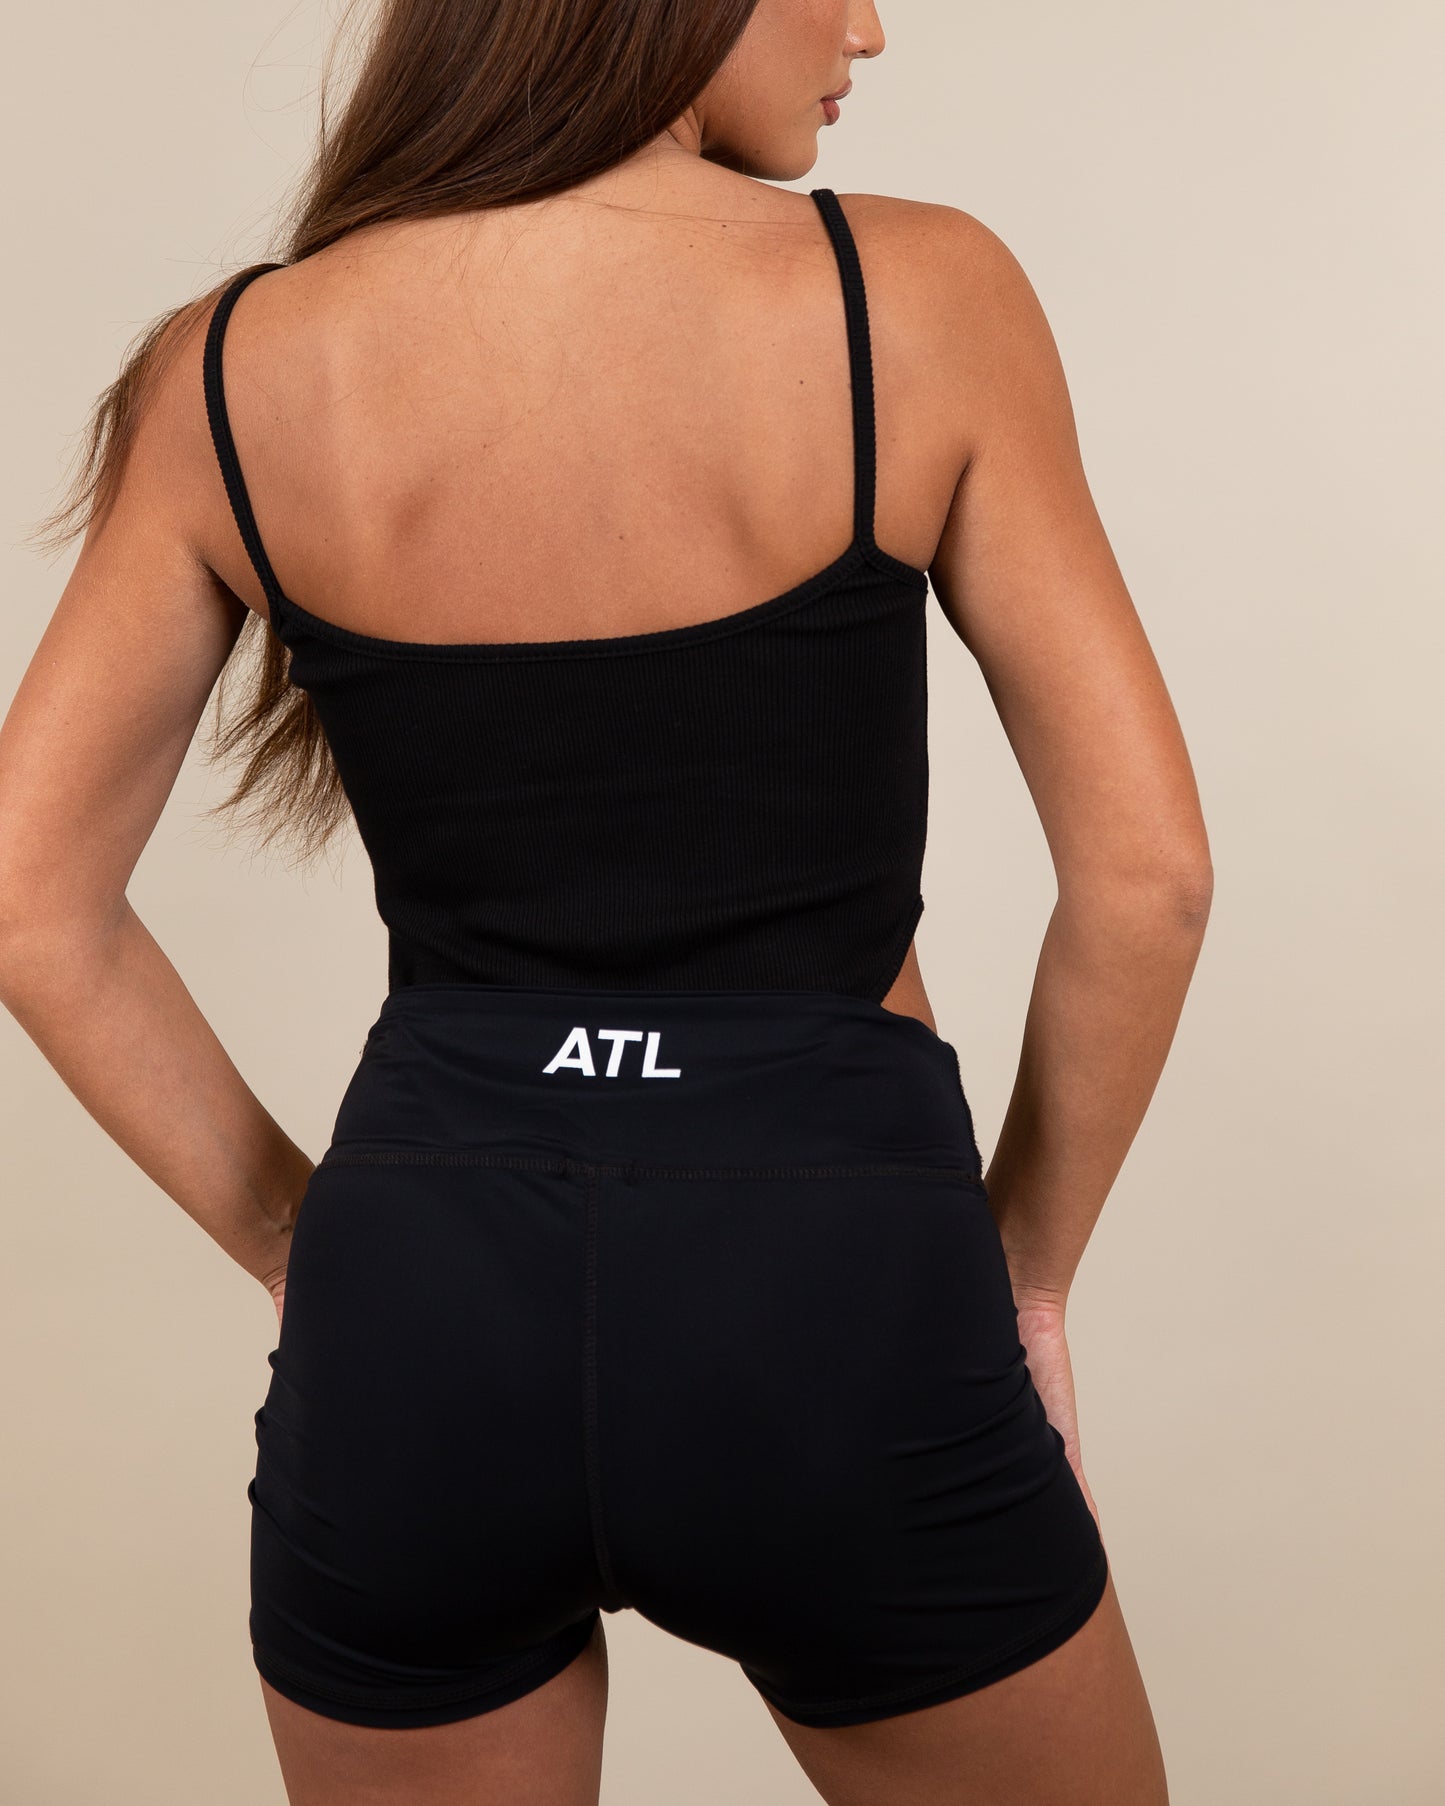 ATL Bodysuit - Black